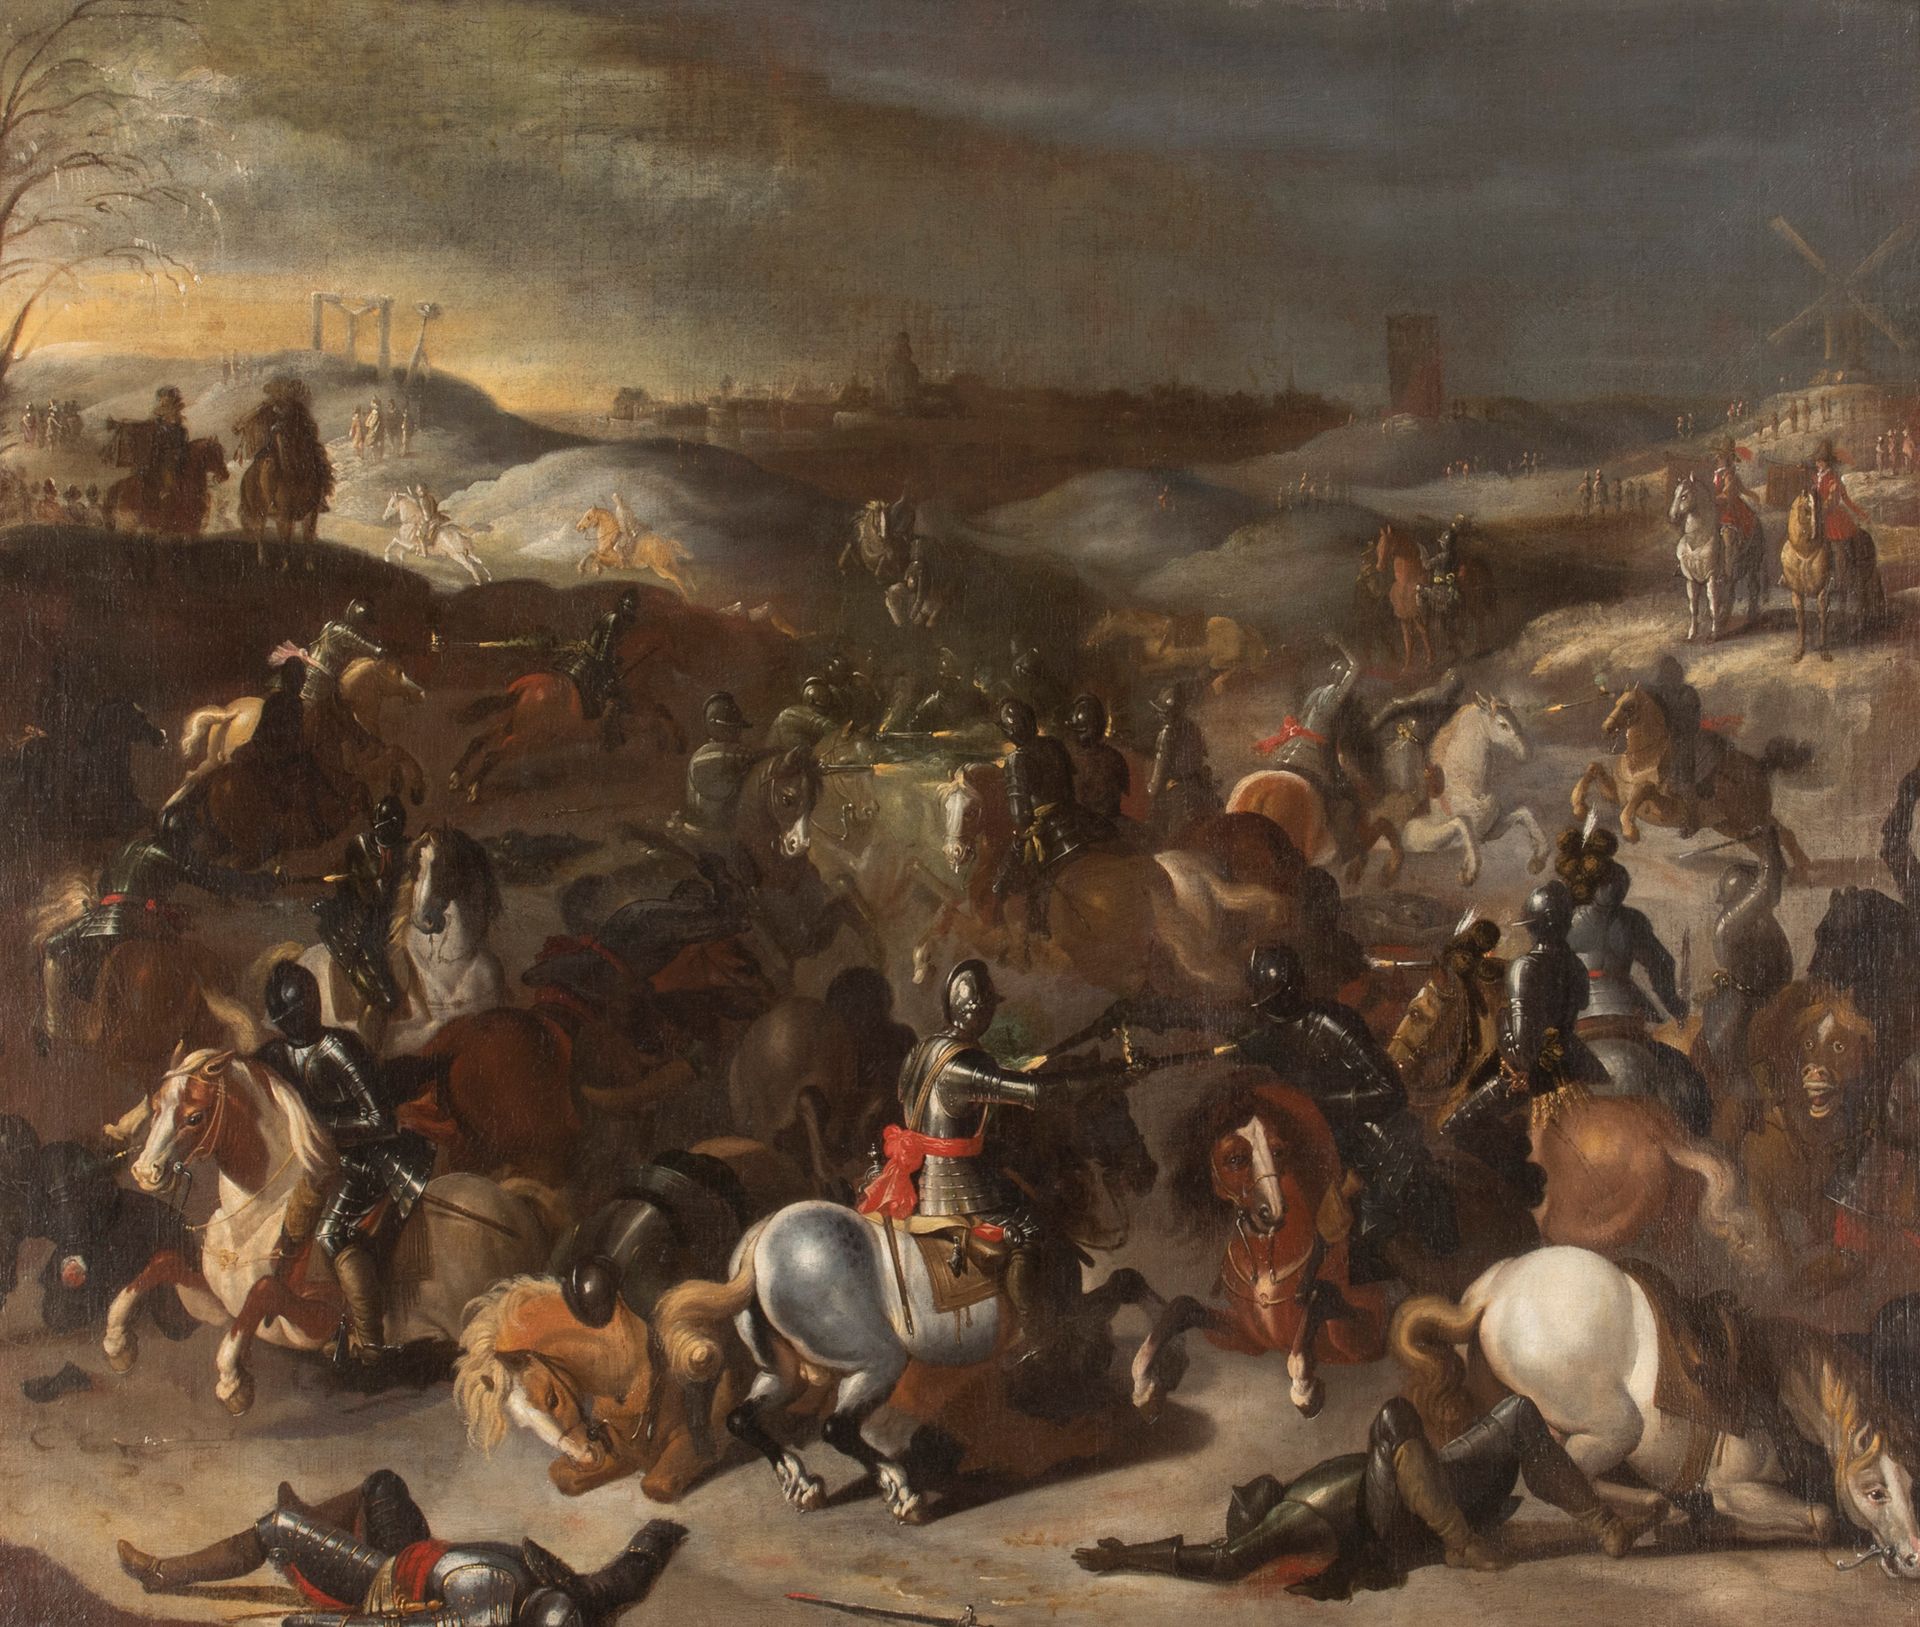 ATTRIBUÉ À PEETER SNAYERS (1592-1668) 
骑兵冲击
布面油画。
重新打磨。
装裱。
107 x 116 cm